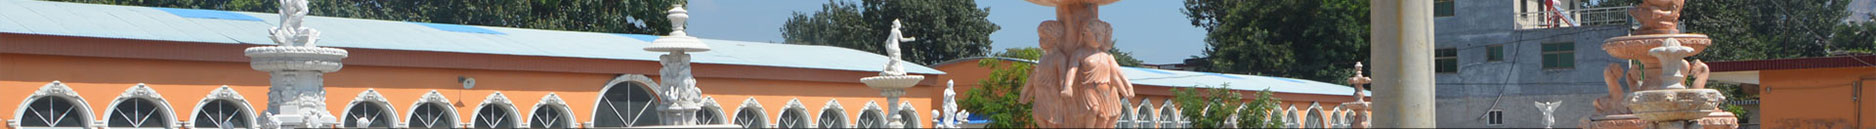 Luxury Marble Statuary Water Fountain Garden Decor Supplier MOKK-593